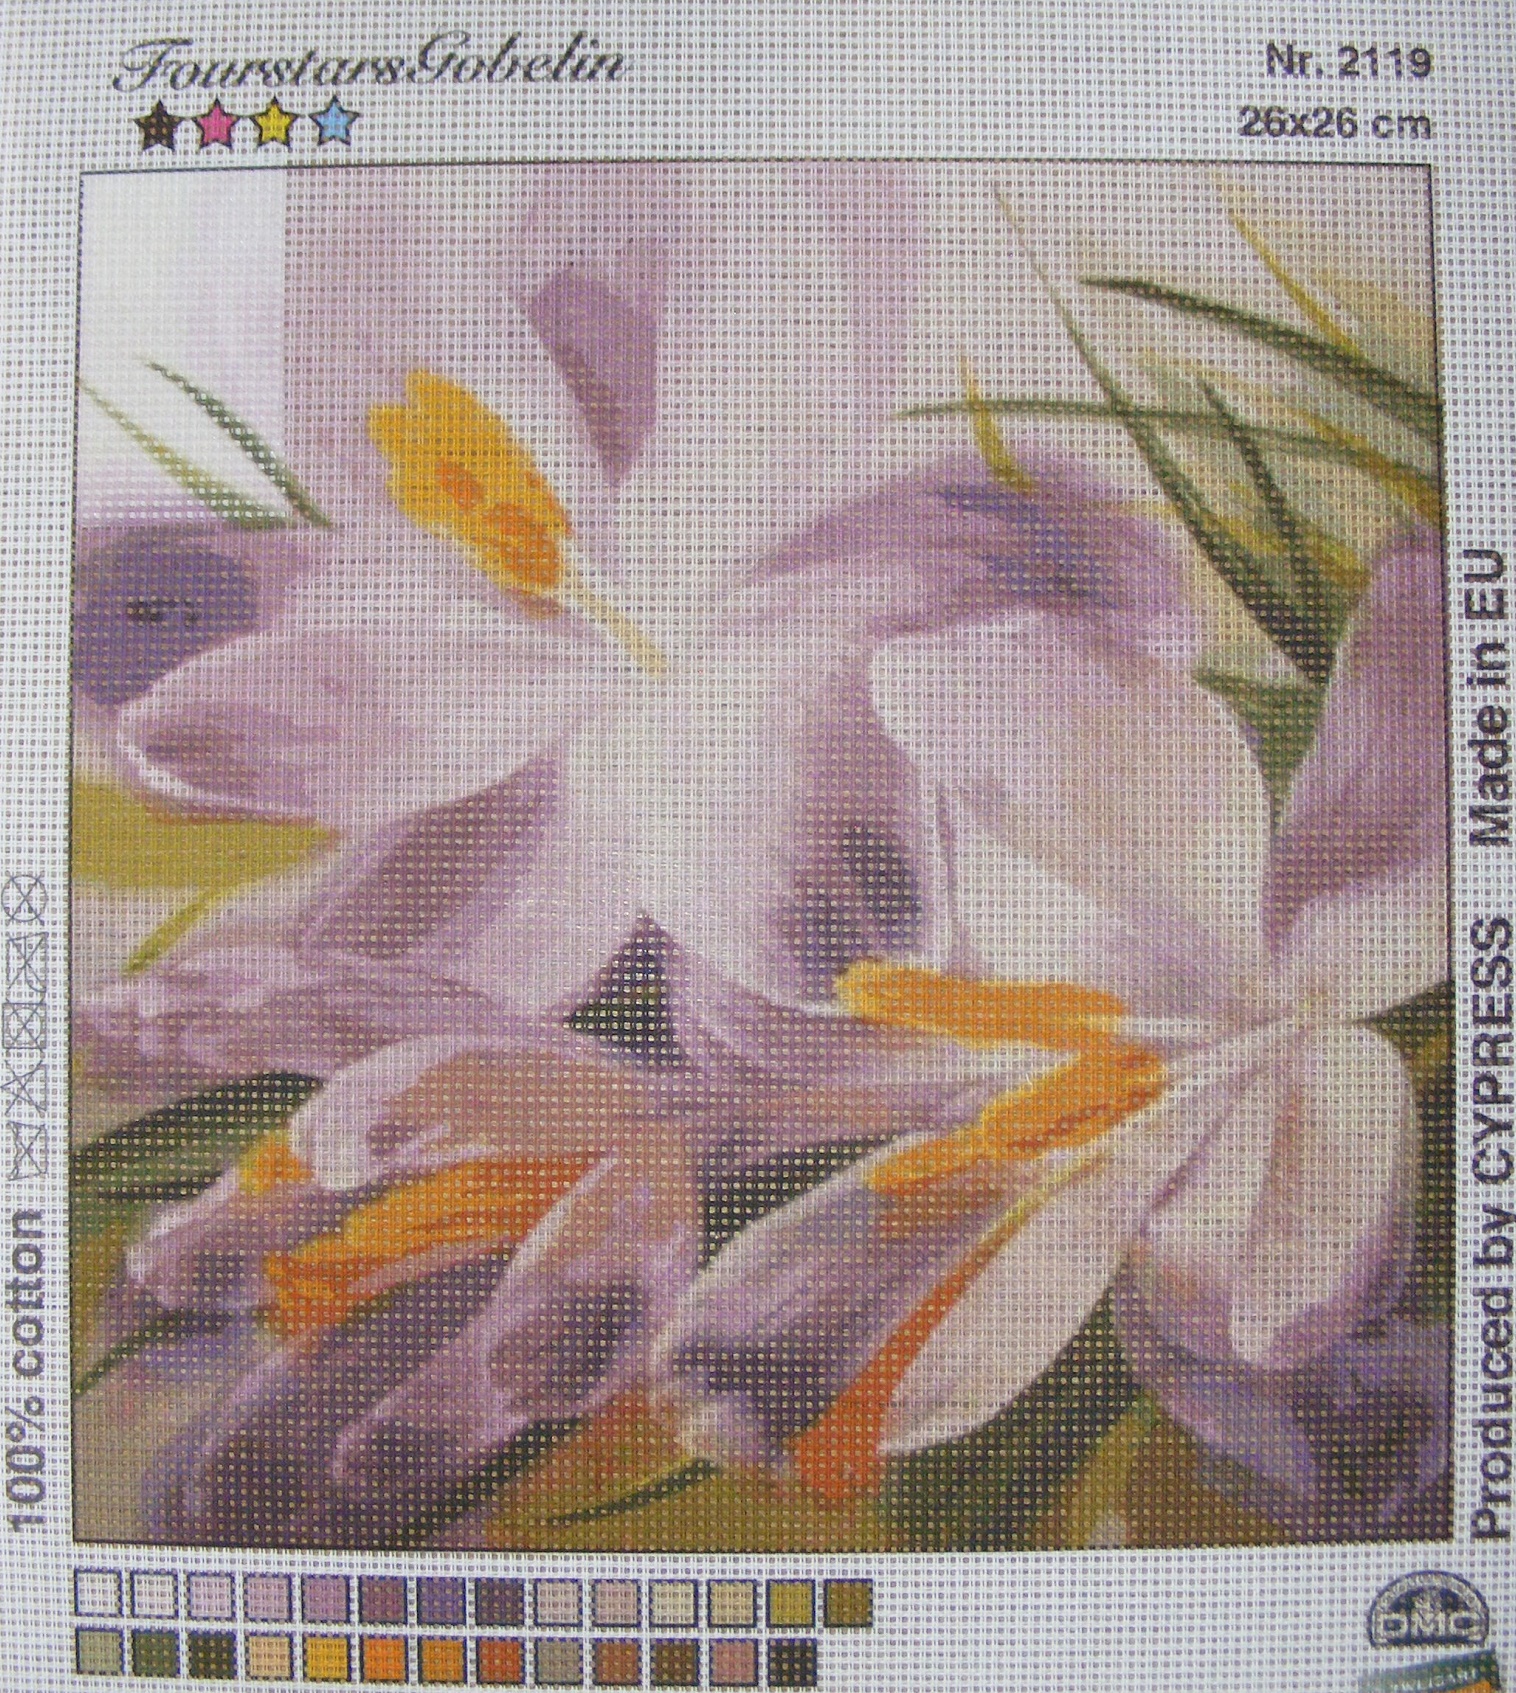 Gobelin 26x26 cm - Virág 2119